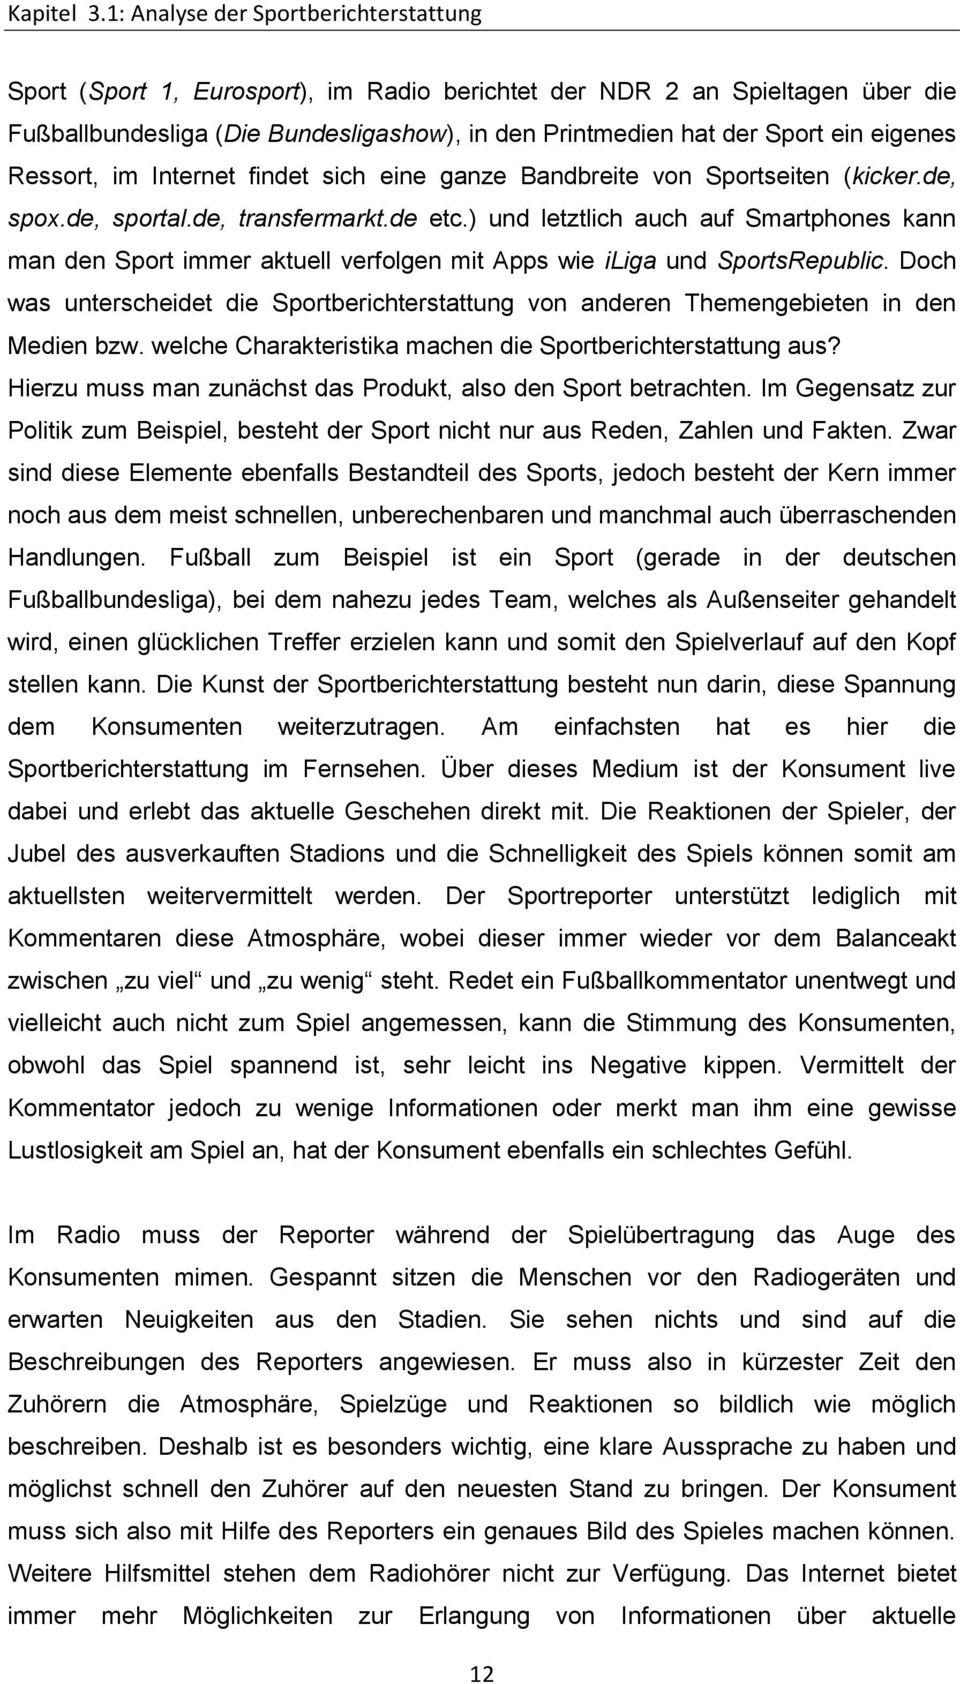 eigenes Ressort, im Internet findet sich eine ganze Bandbreite von Sportseiten (kicker.de, spox.de, sportal.de, transfermarkt.de etc.